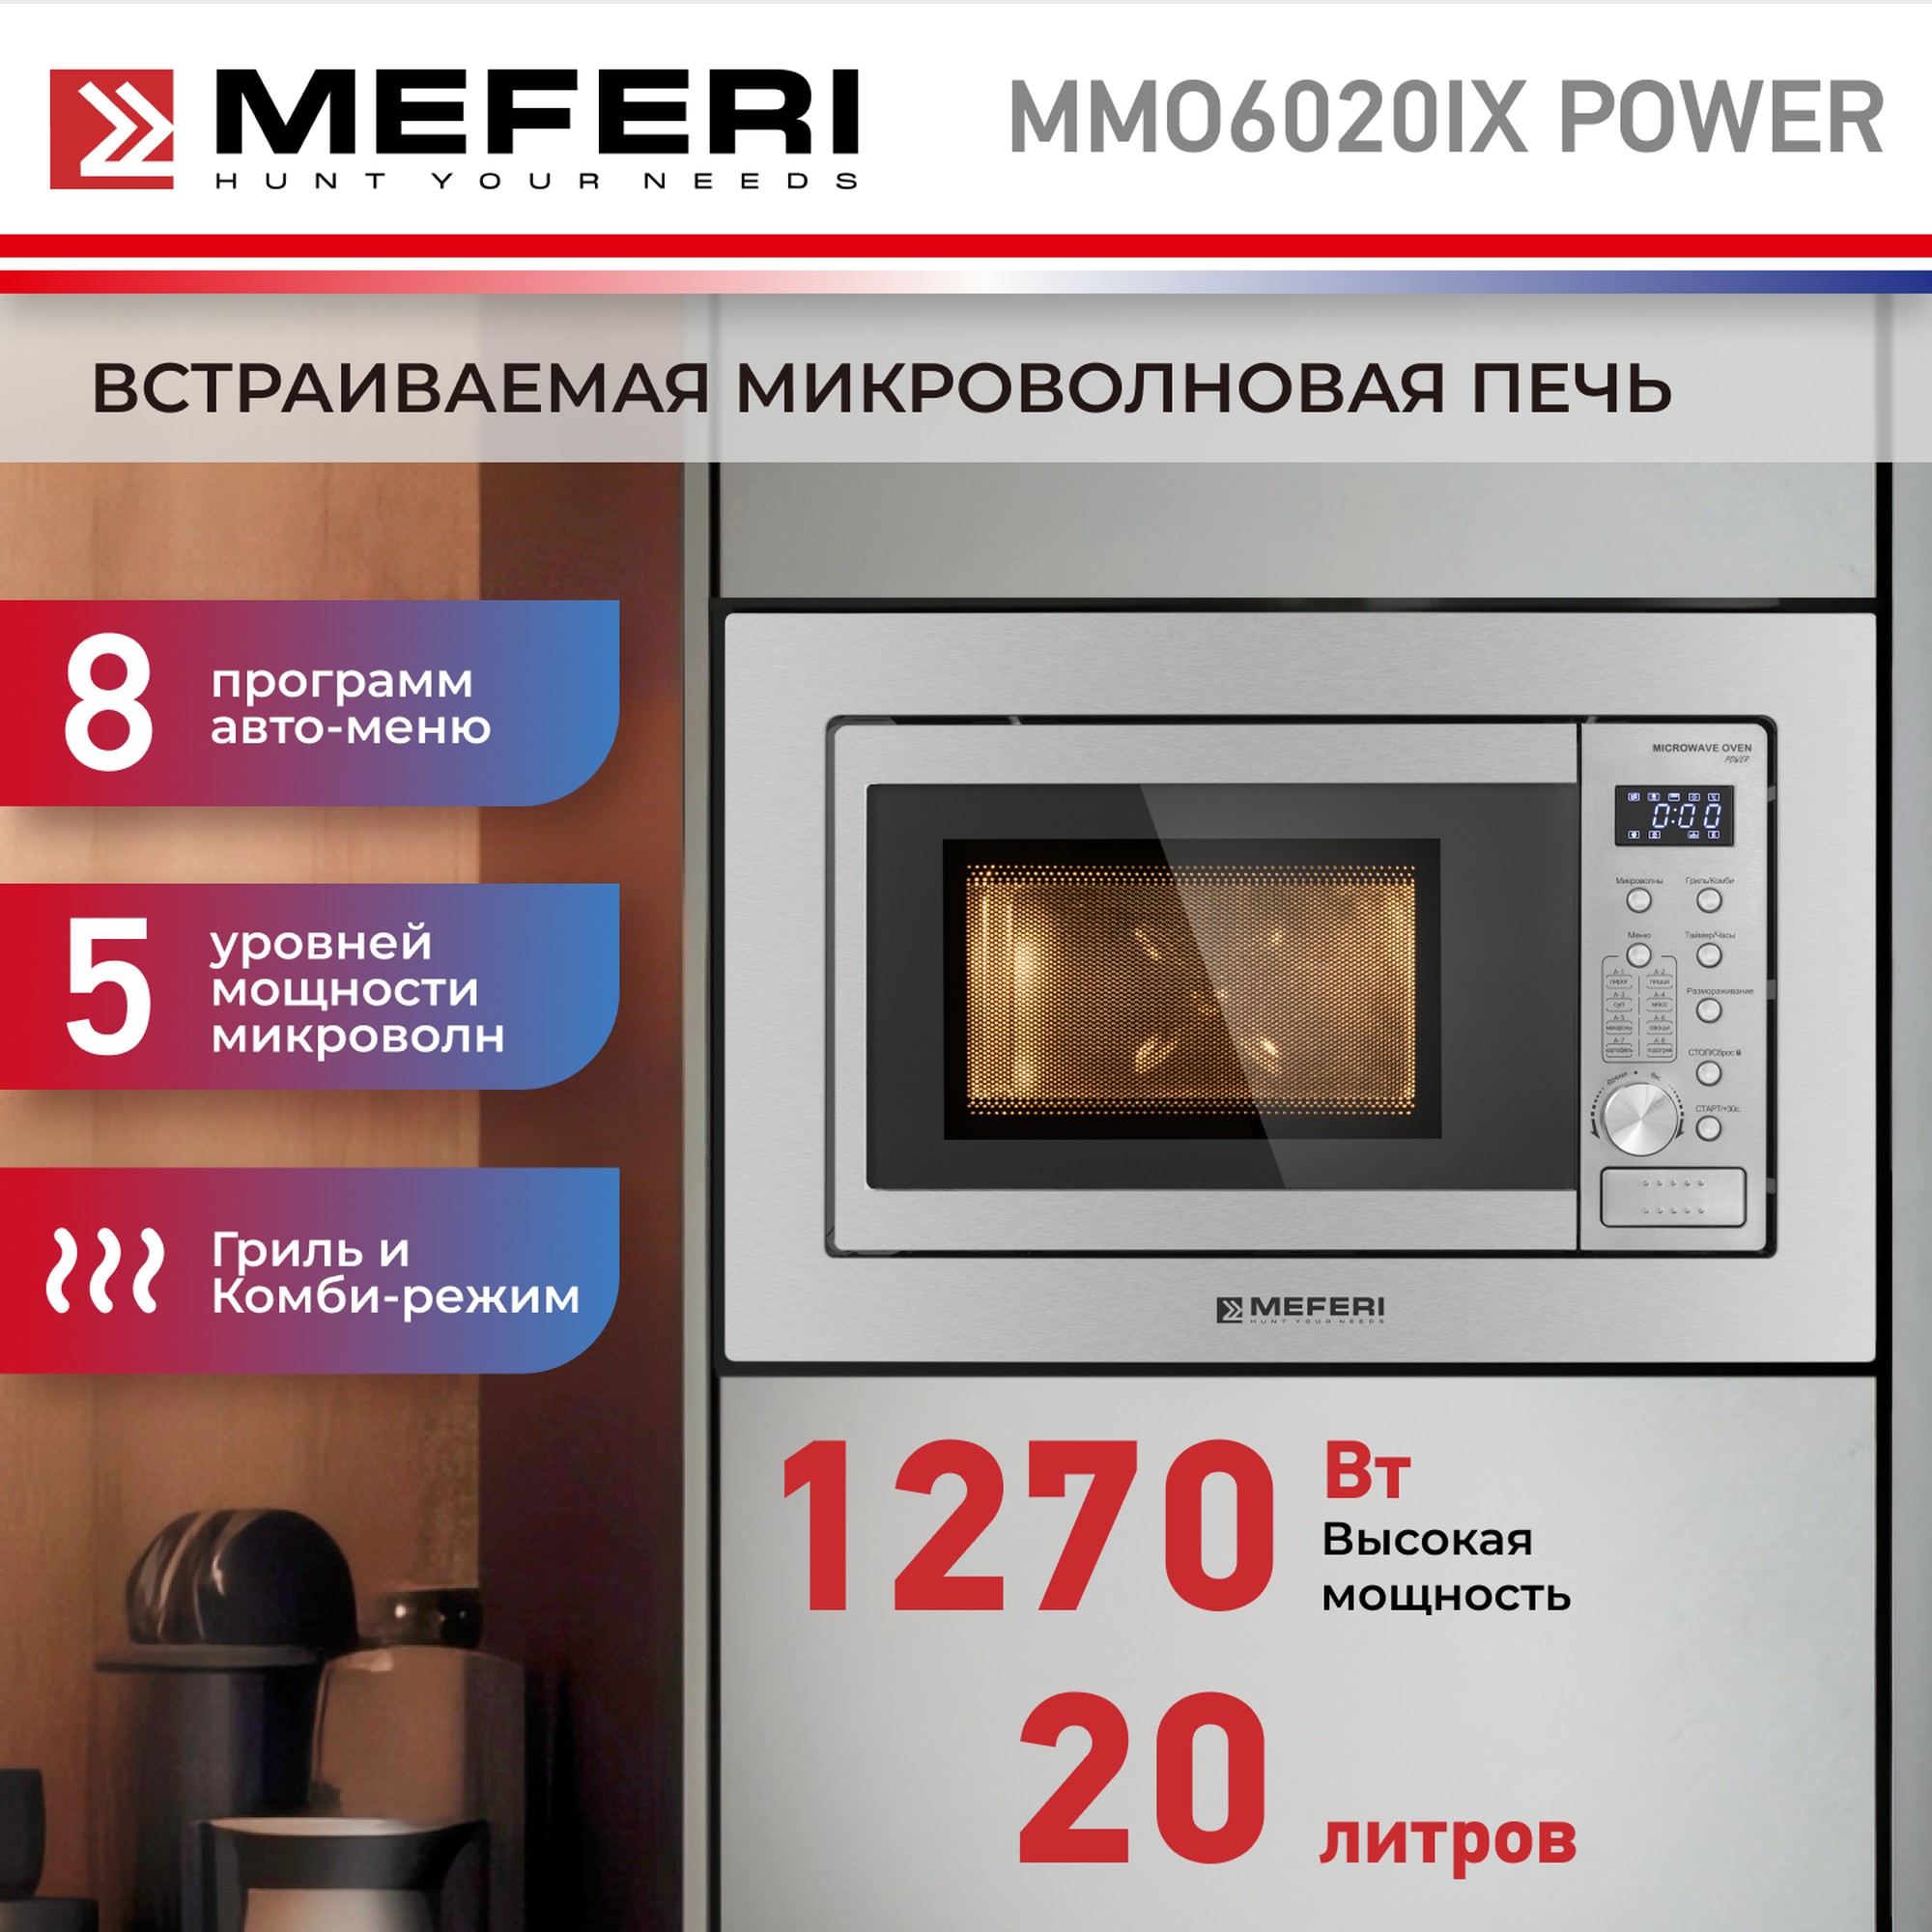 Встраиваемая микроволновая печь MEFERI MMO6020IX POWER встраиваемая варочная панель индукционная meferi mih453bk power